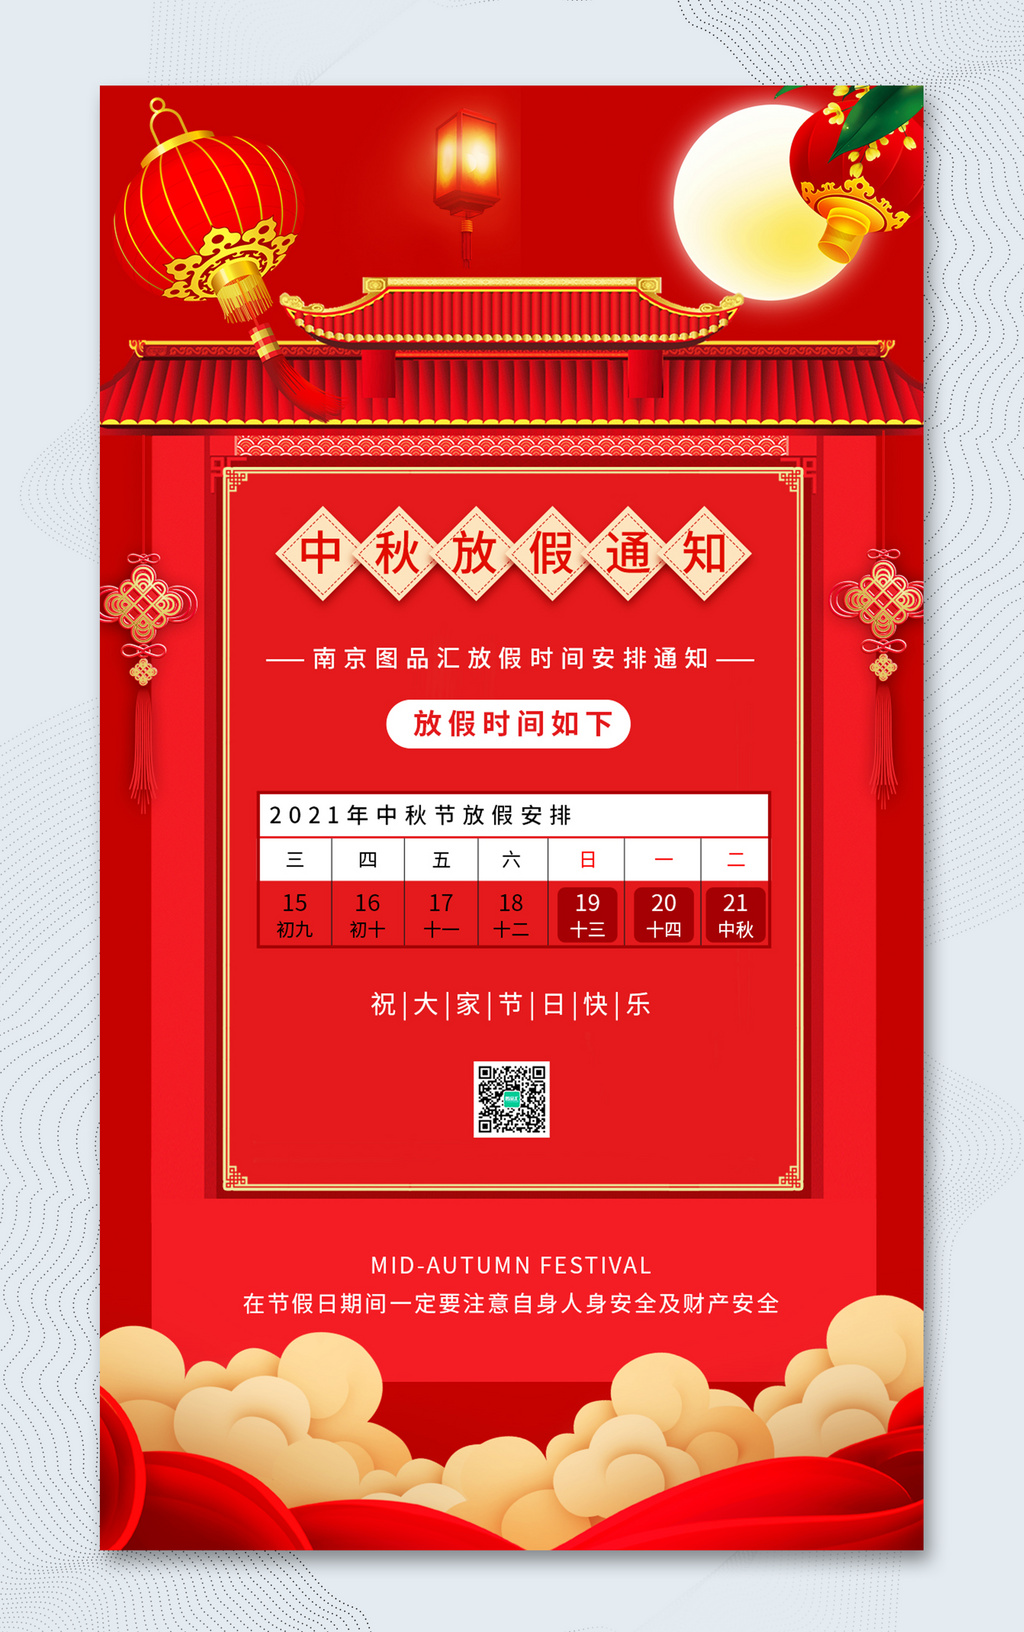 红色8.15中秋节放假通知宣传海报